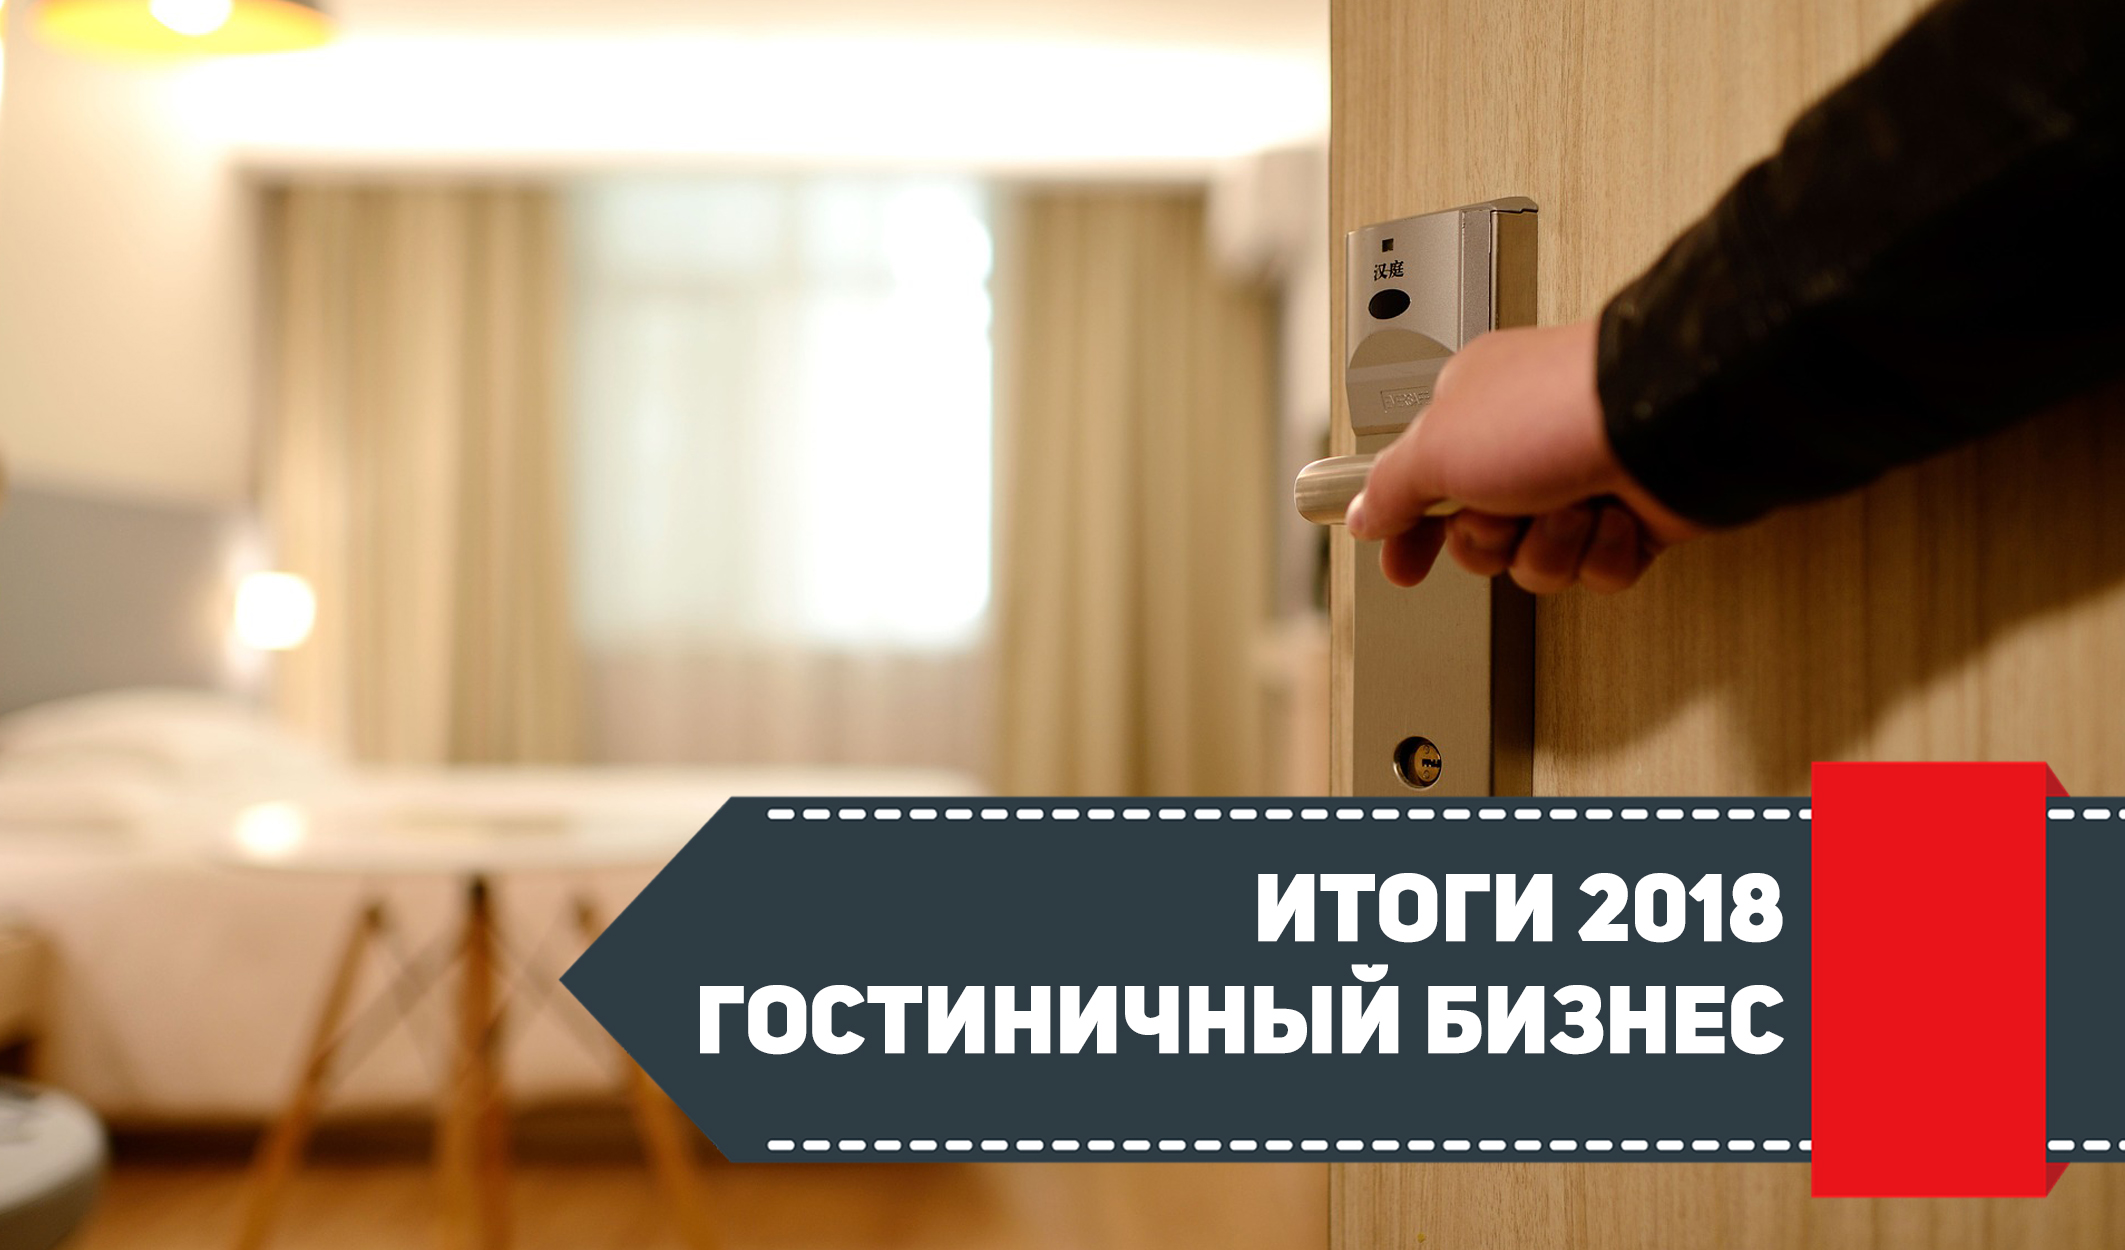 В Петербурге за 2018 год открыли 10 новых отелей